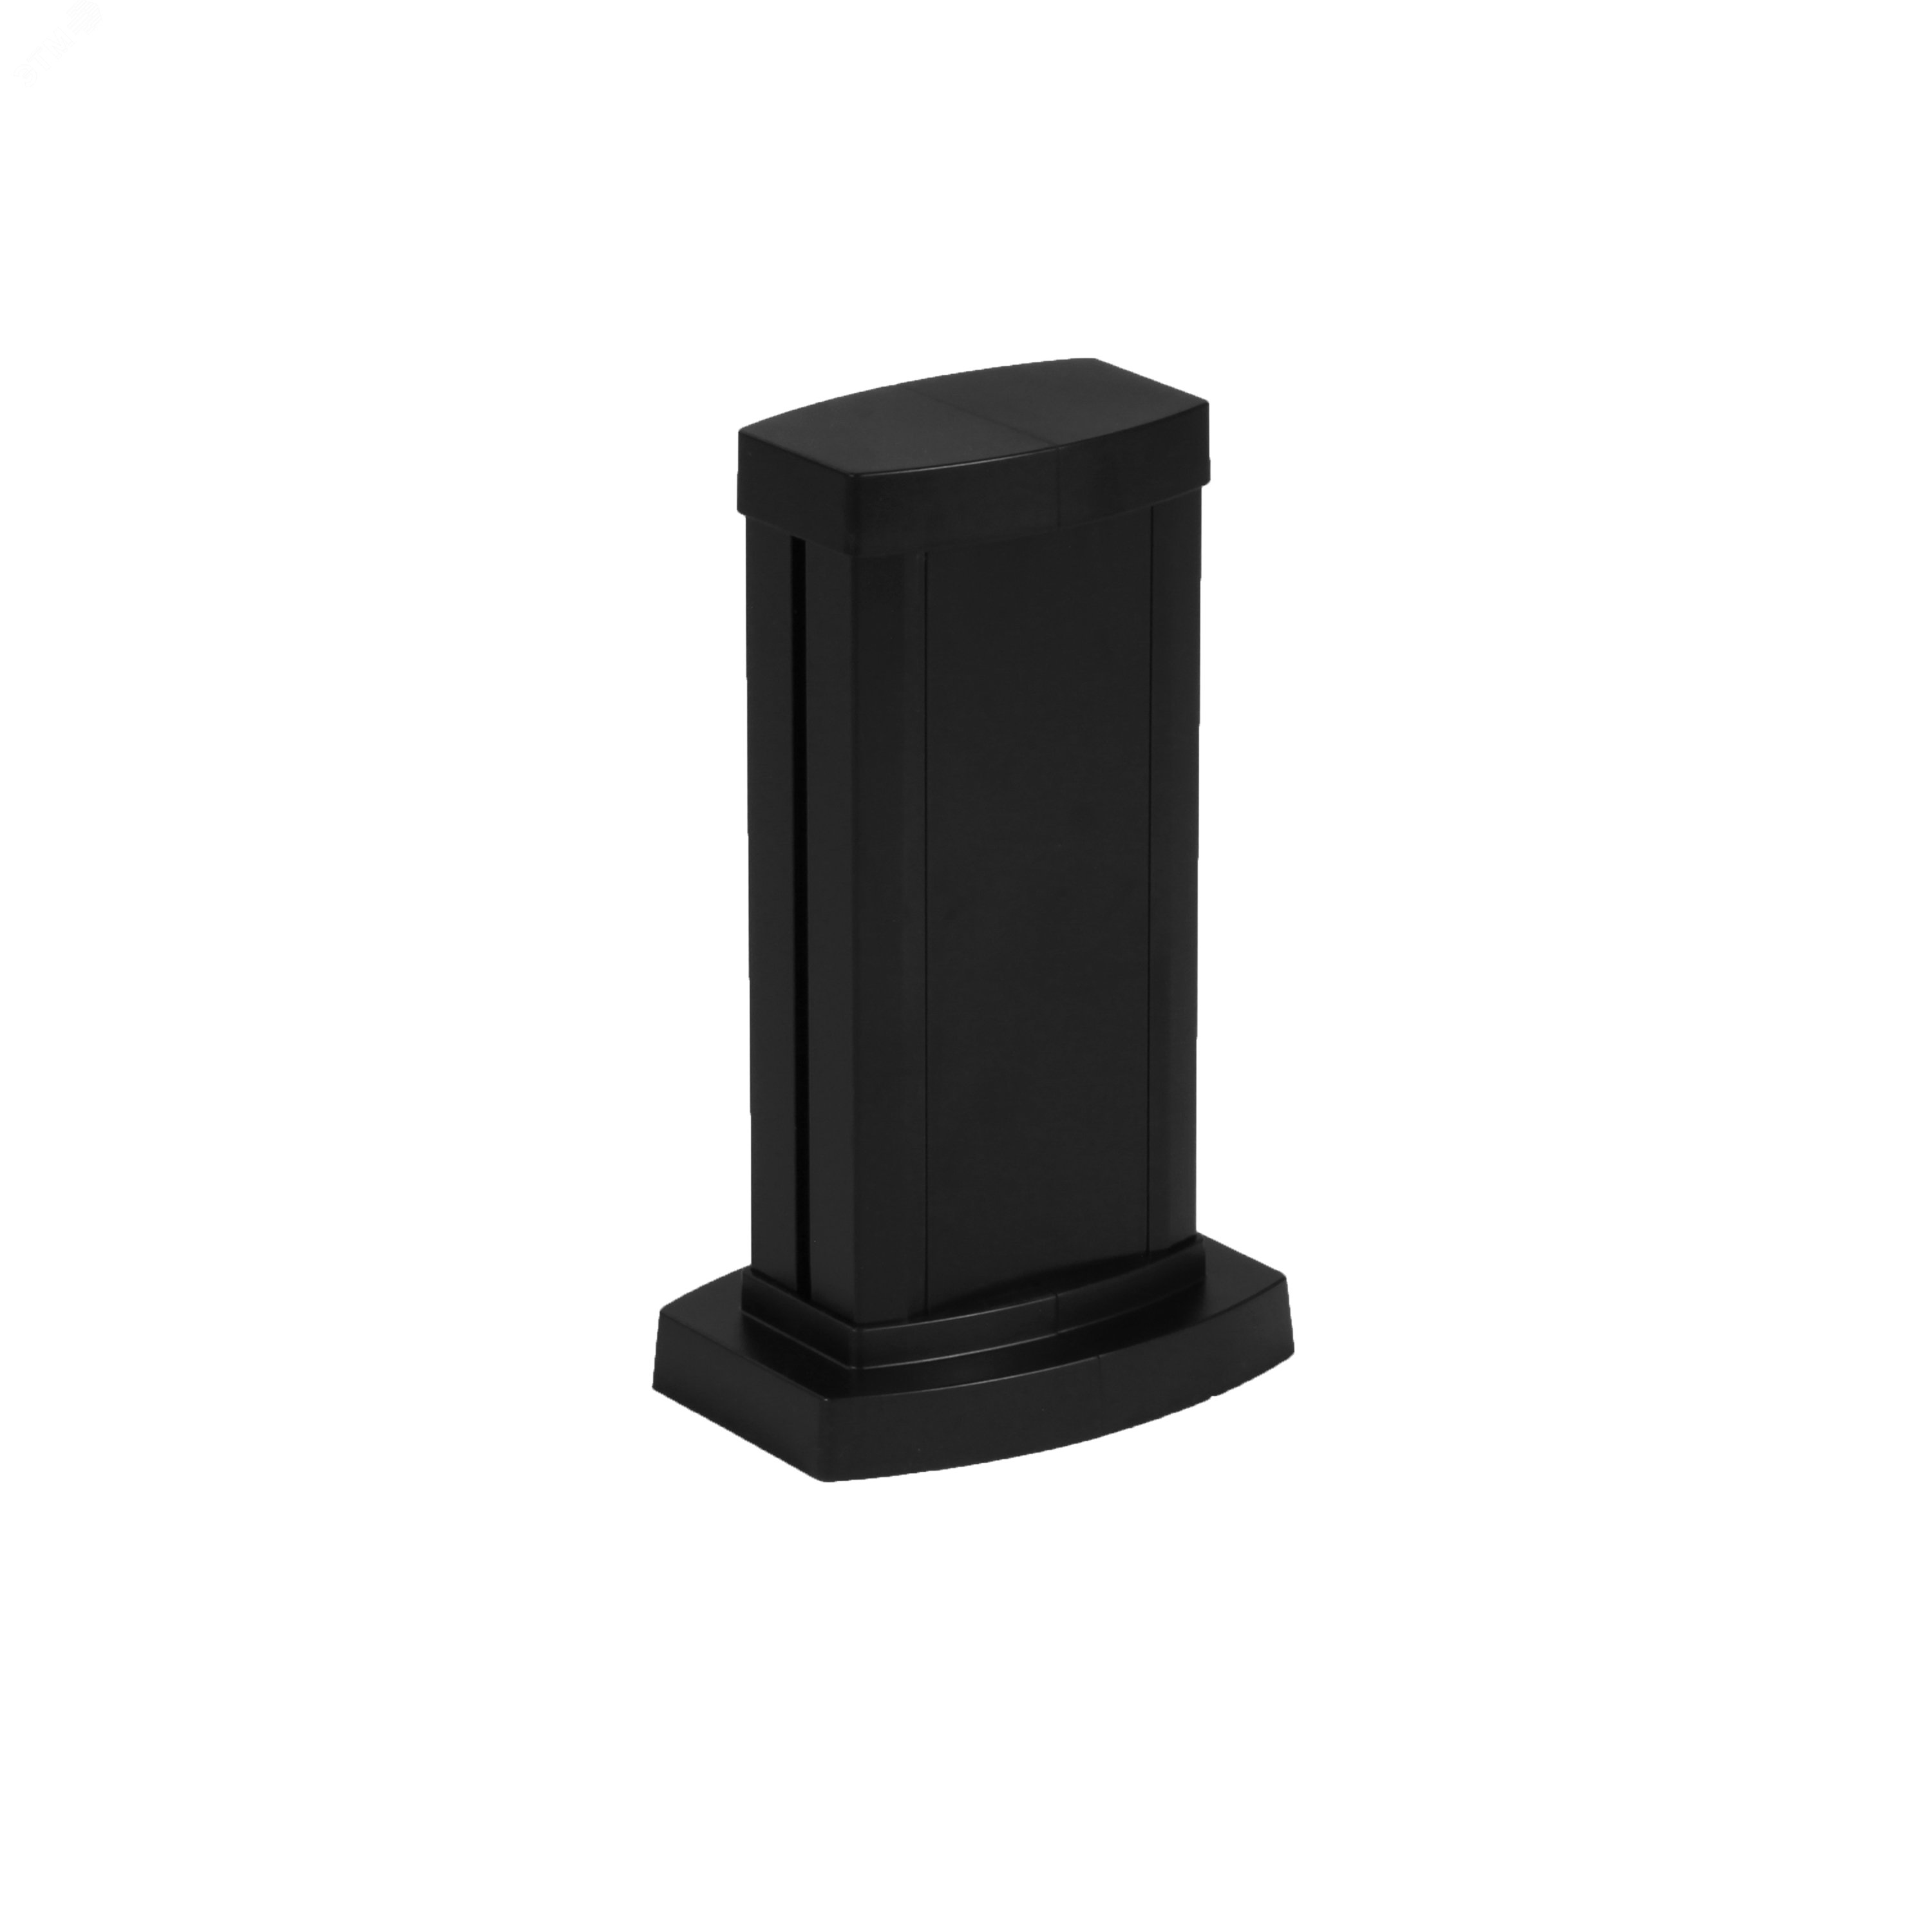 Универсальная мини-колонна алюминиевая с крышкой из алюминия 1 секция, высота 0,3 метра, цвет черный 653102 Legrand - превью 2